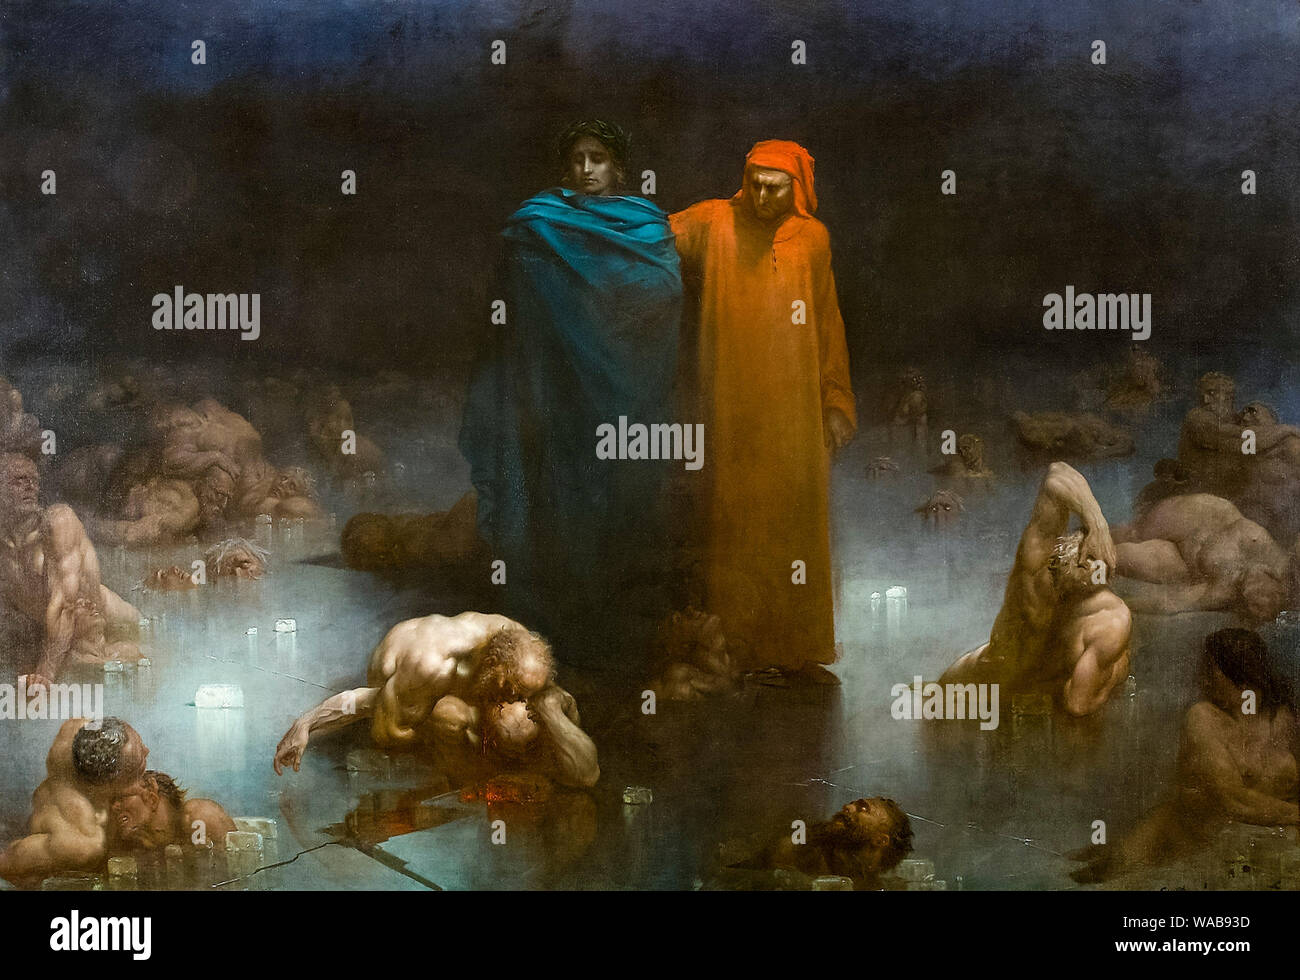 Gustave Doré, Dante et Virgile dans le neuvième cercle de l'enfer, divine comedy, peinture, 1861 Banque D'Images